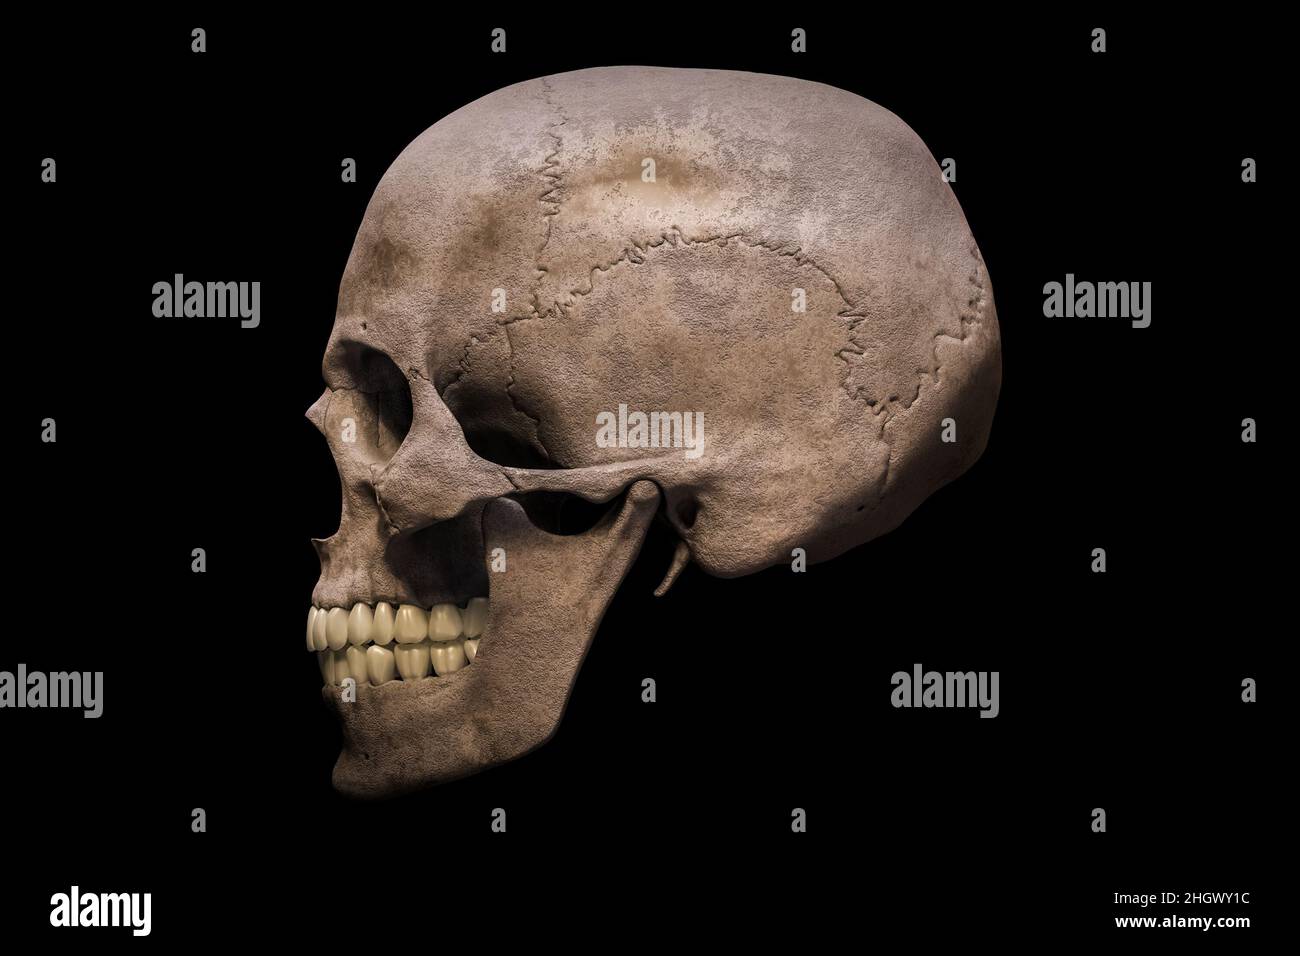 Homo sapiens männlicher Schädel anatomisch genaue Profil- oder Seitenansicht isoliert auf schwarzem Hintergrund 3D Rendering Illustration. Menschliche Anatomie, Medizin, Stockfoto